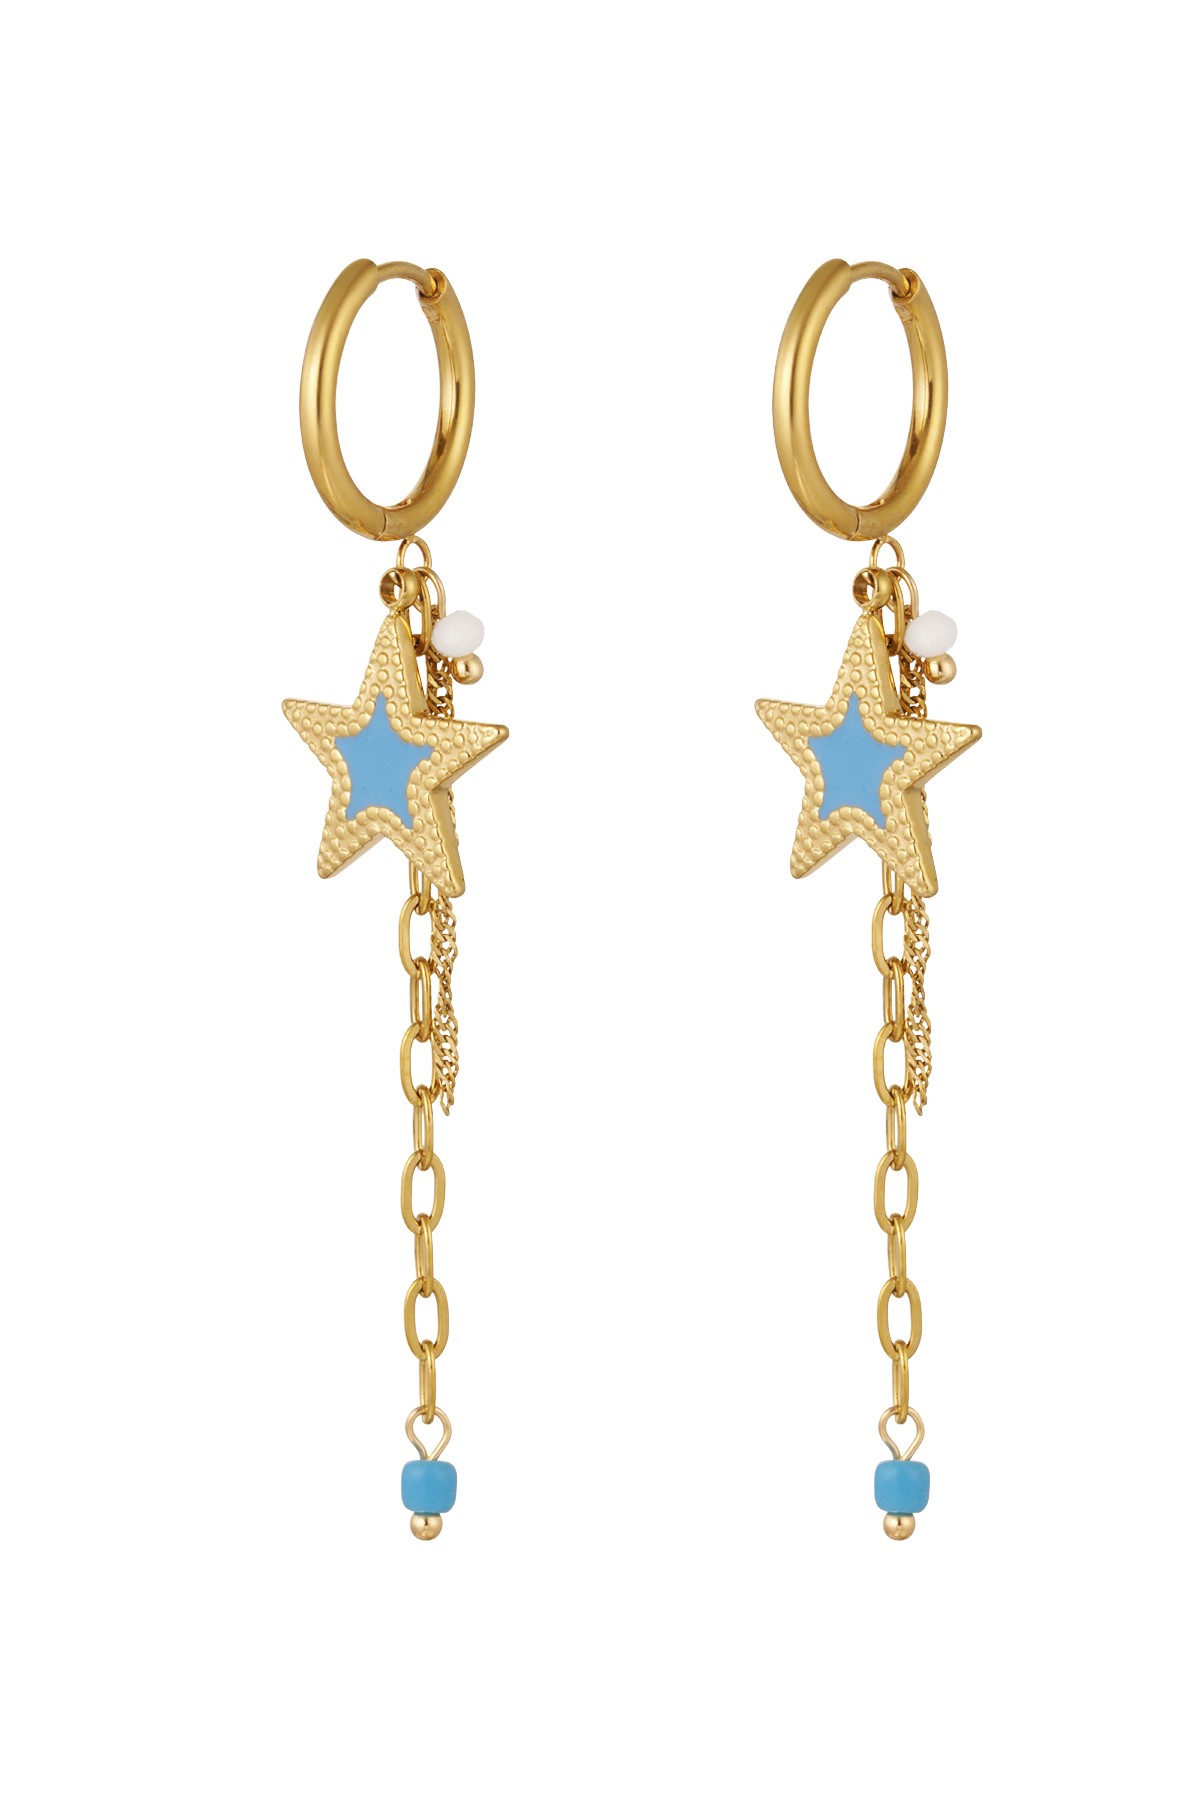 Boucles d'oreilles avec chaîne et étoile bleu - or 